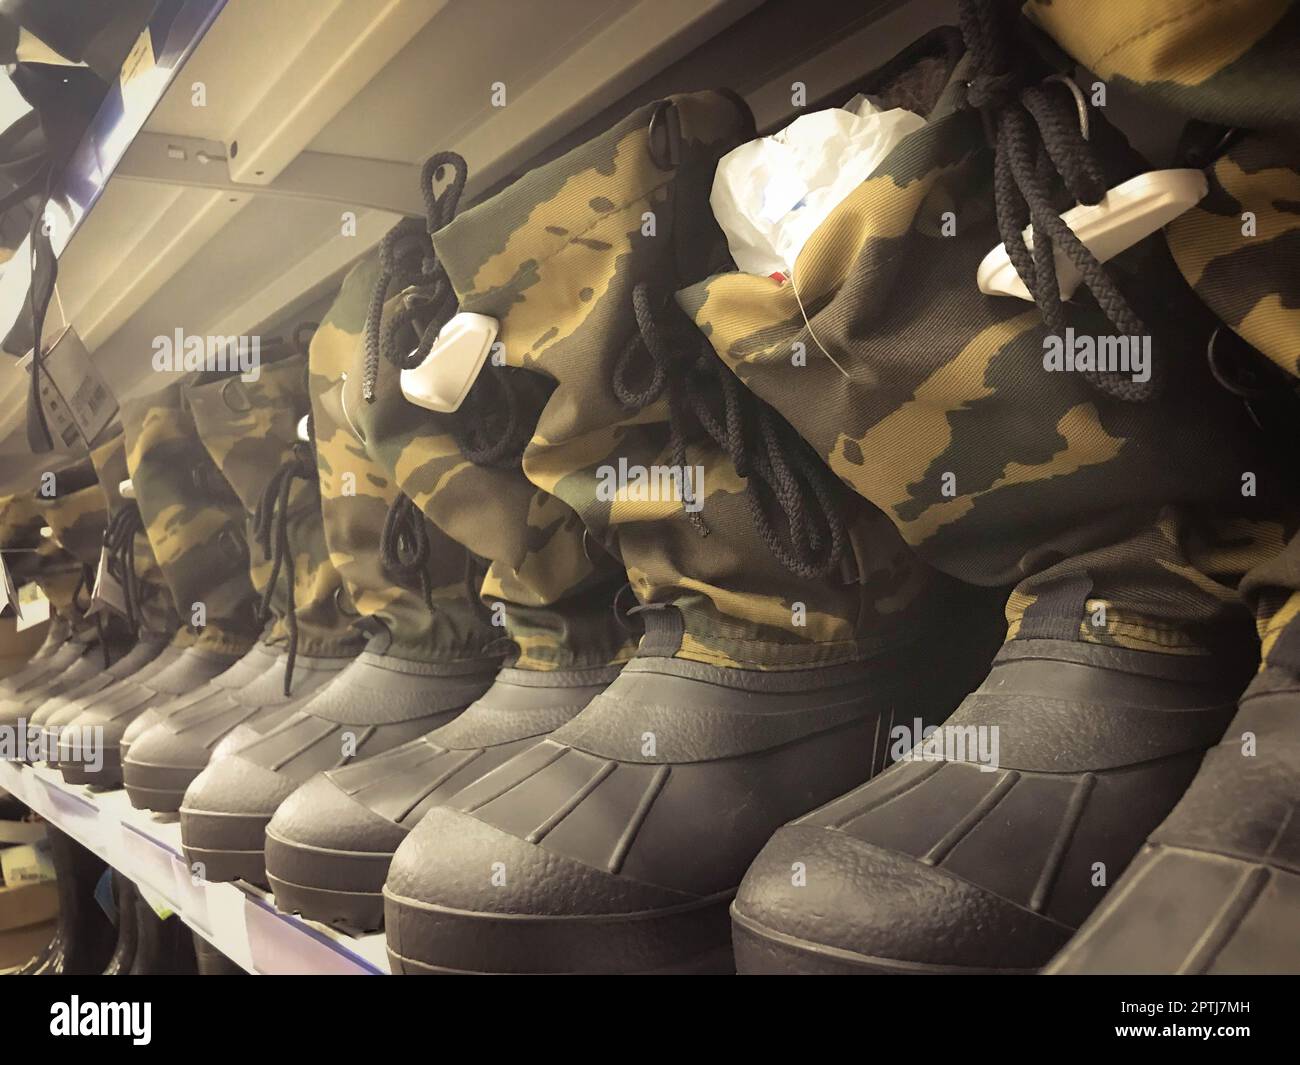 Stivali militari in gomma da uomo, scarpe in colori protettivi cachi in fila sullo scaffale del magazzino, negozio. Foto Stock